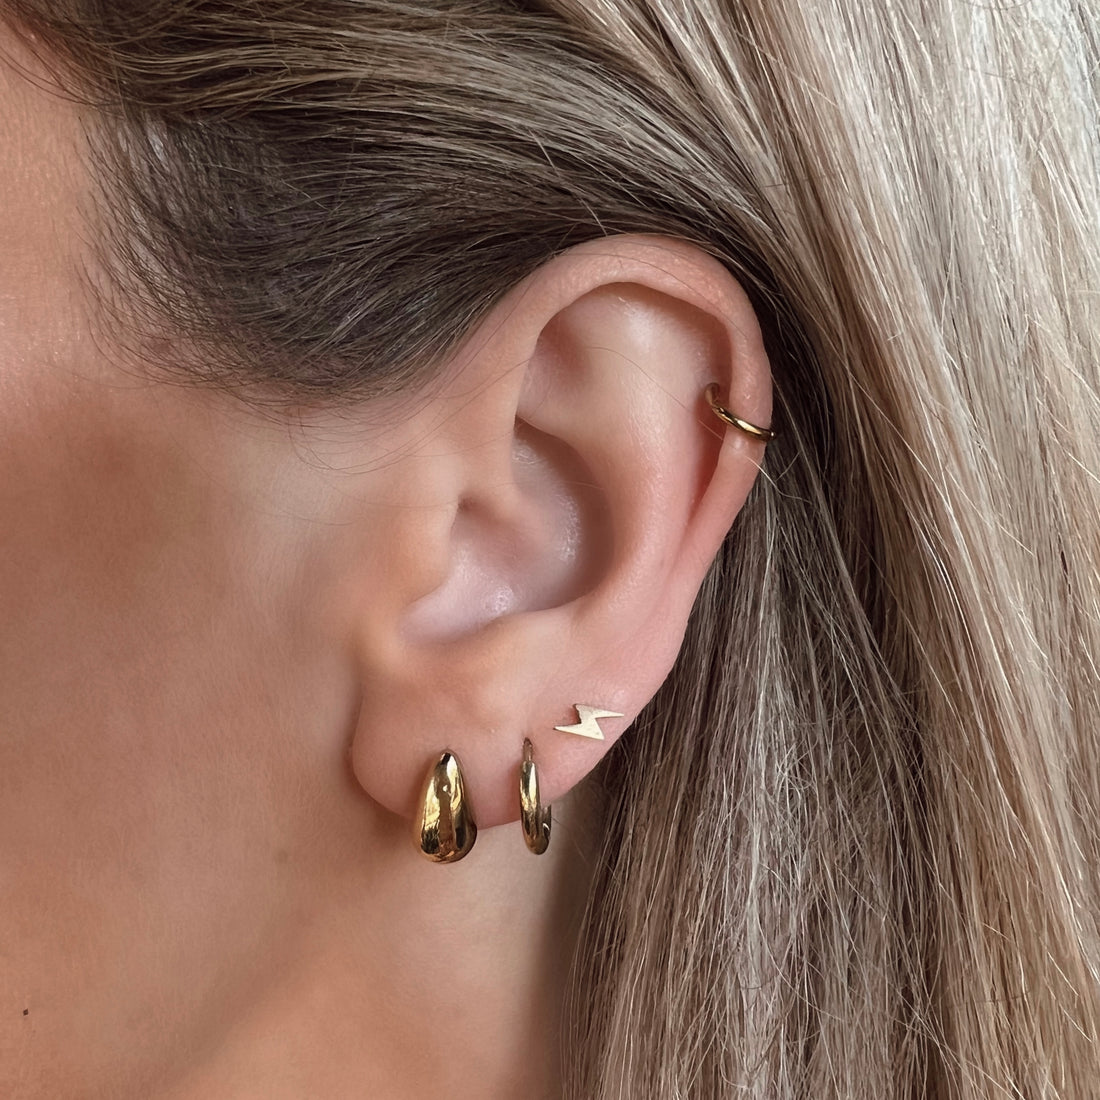 Teardrop earrings small